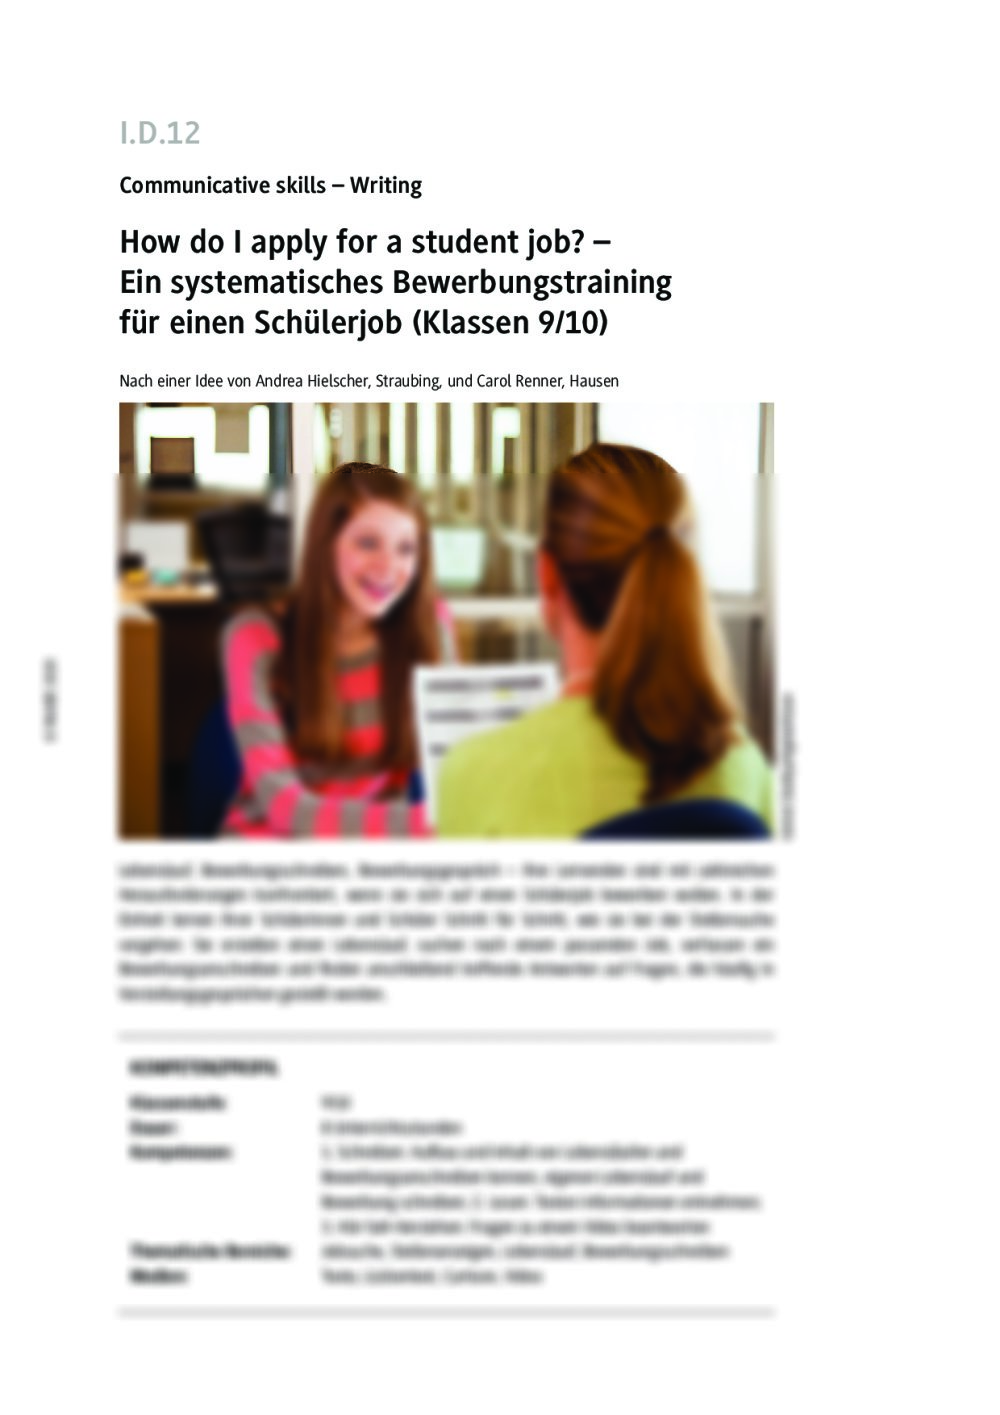 How do I apply for a student job? - Seite 1